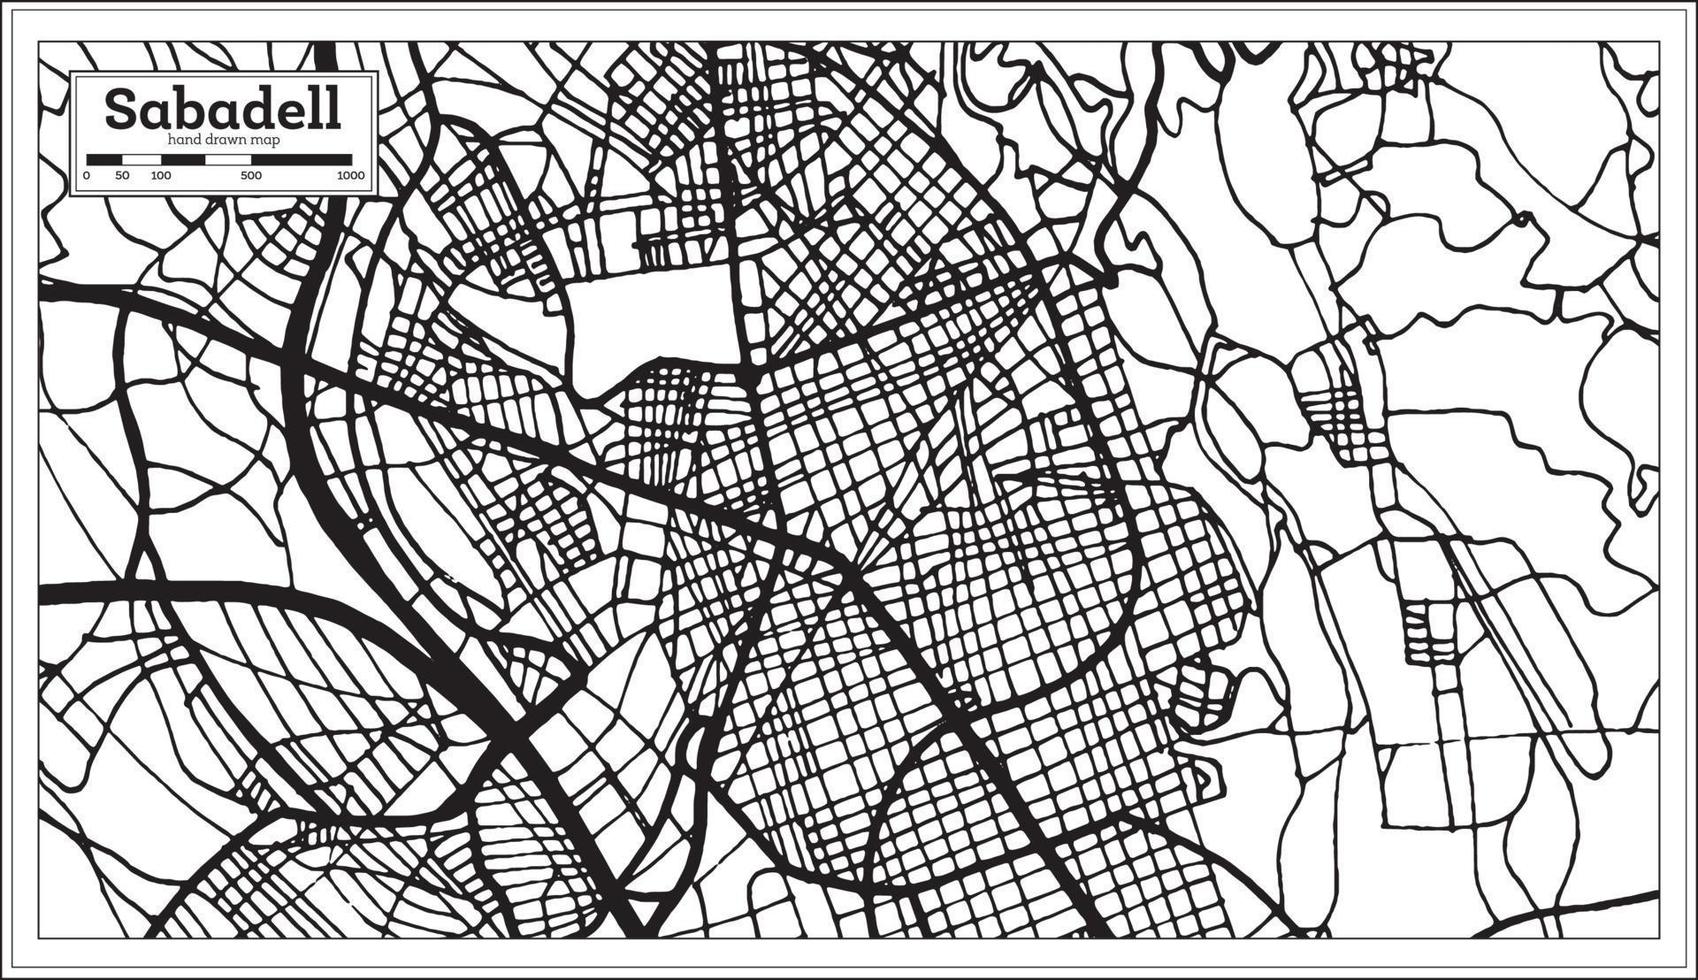 carte de la ville de sabadell en espagne dans un style rétro. carte muette. vecteur